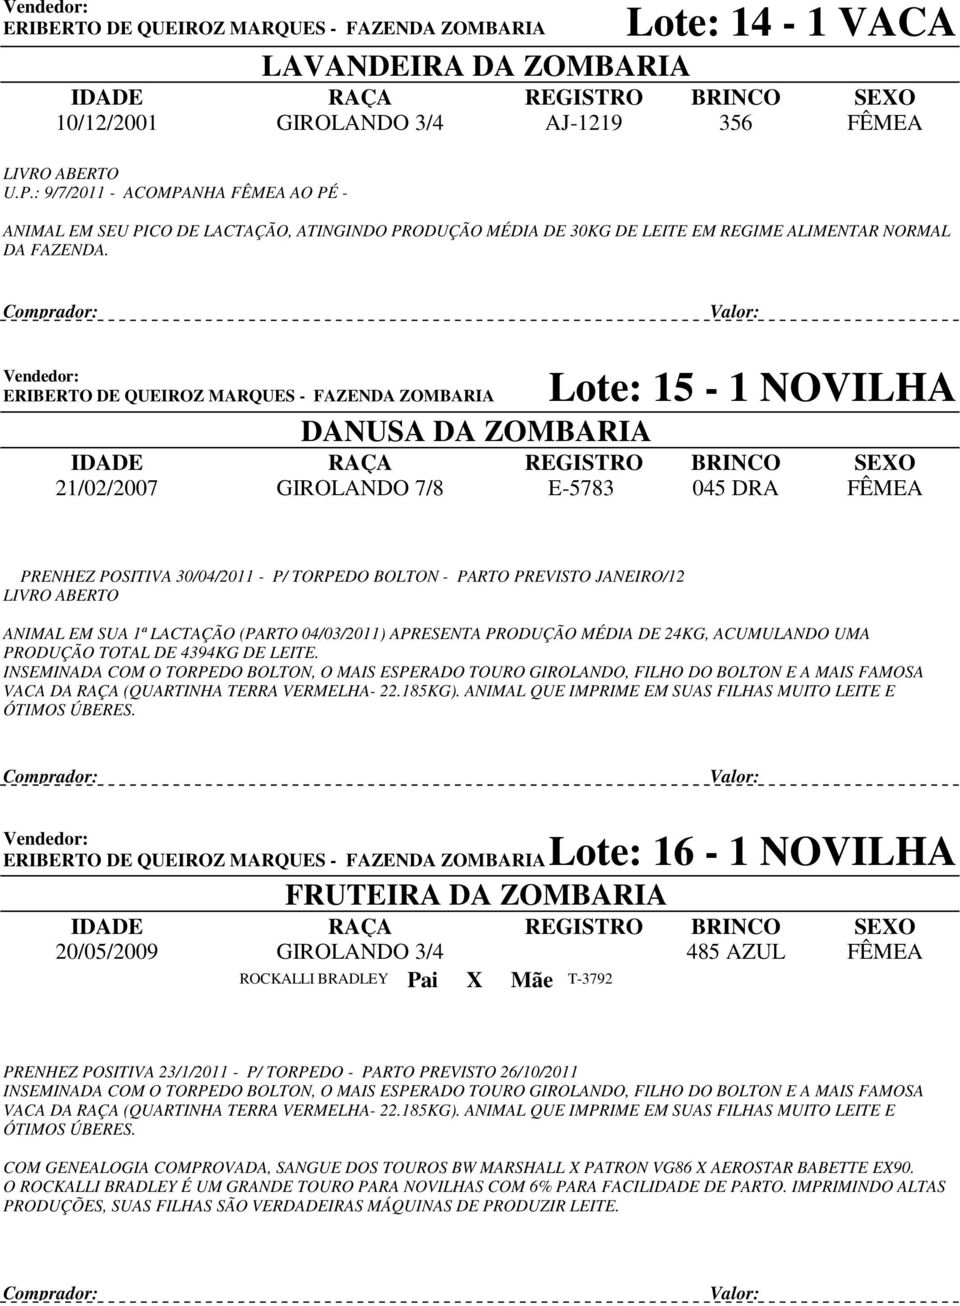 ERIBERTO DE QUEIROZ MARQUES - FAZENDA ZOMBARIA 21/02/2007 DANUSA DA ZOMBARIA GIROLANDO 7/8 Lote: 15-1 NOVILHA E-5783 045 DRA PRENHEZ POSITIVA 30/04/2011 - P/ TORPEDO BOLTON - PARTO PREVISTO